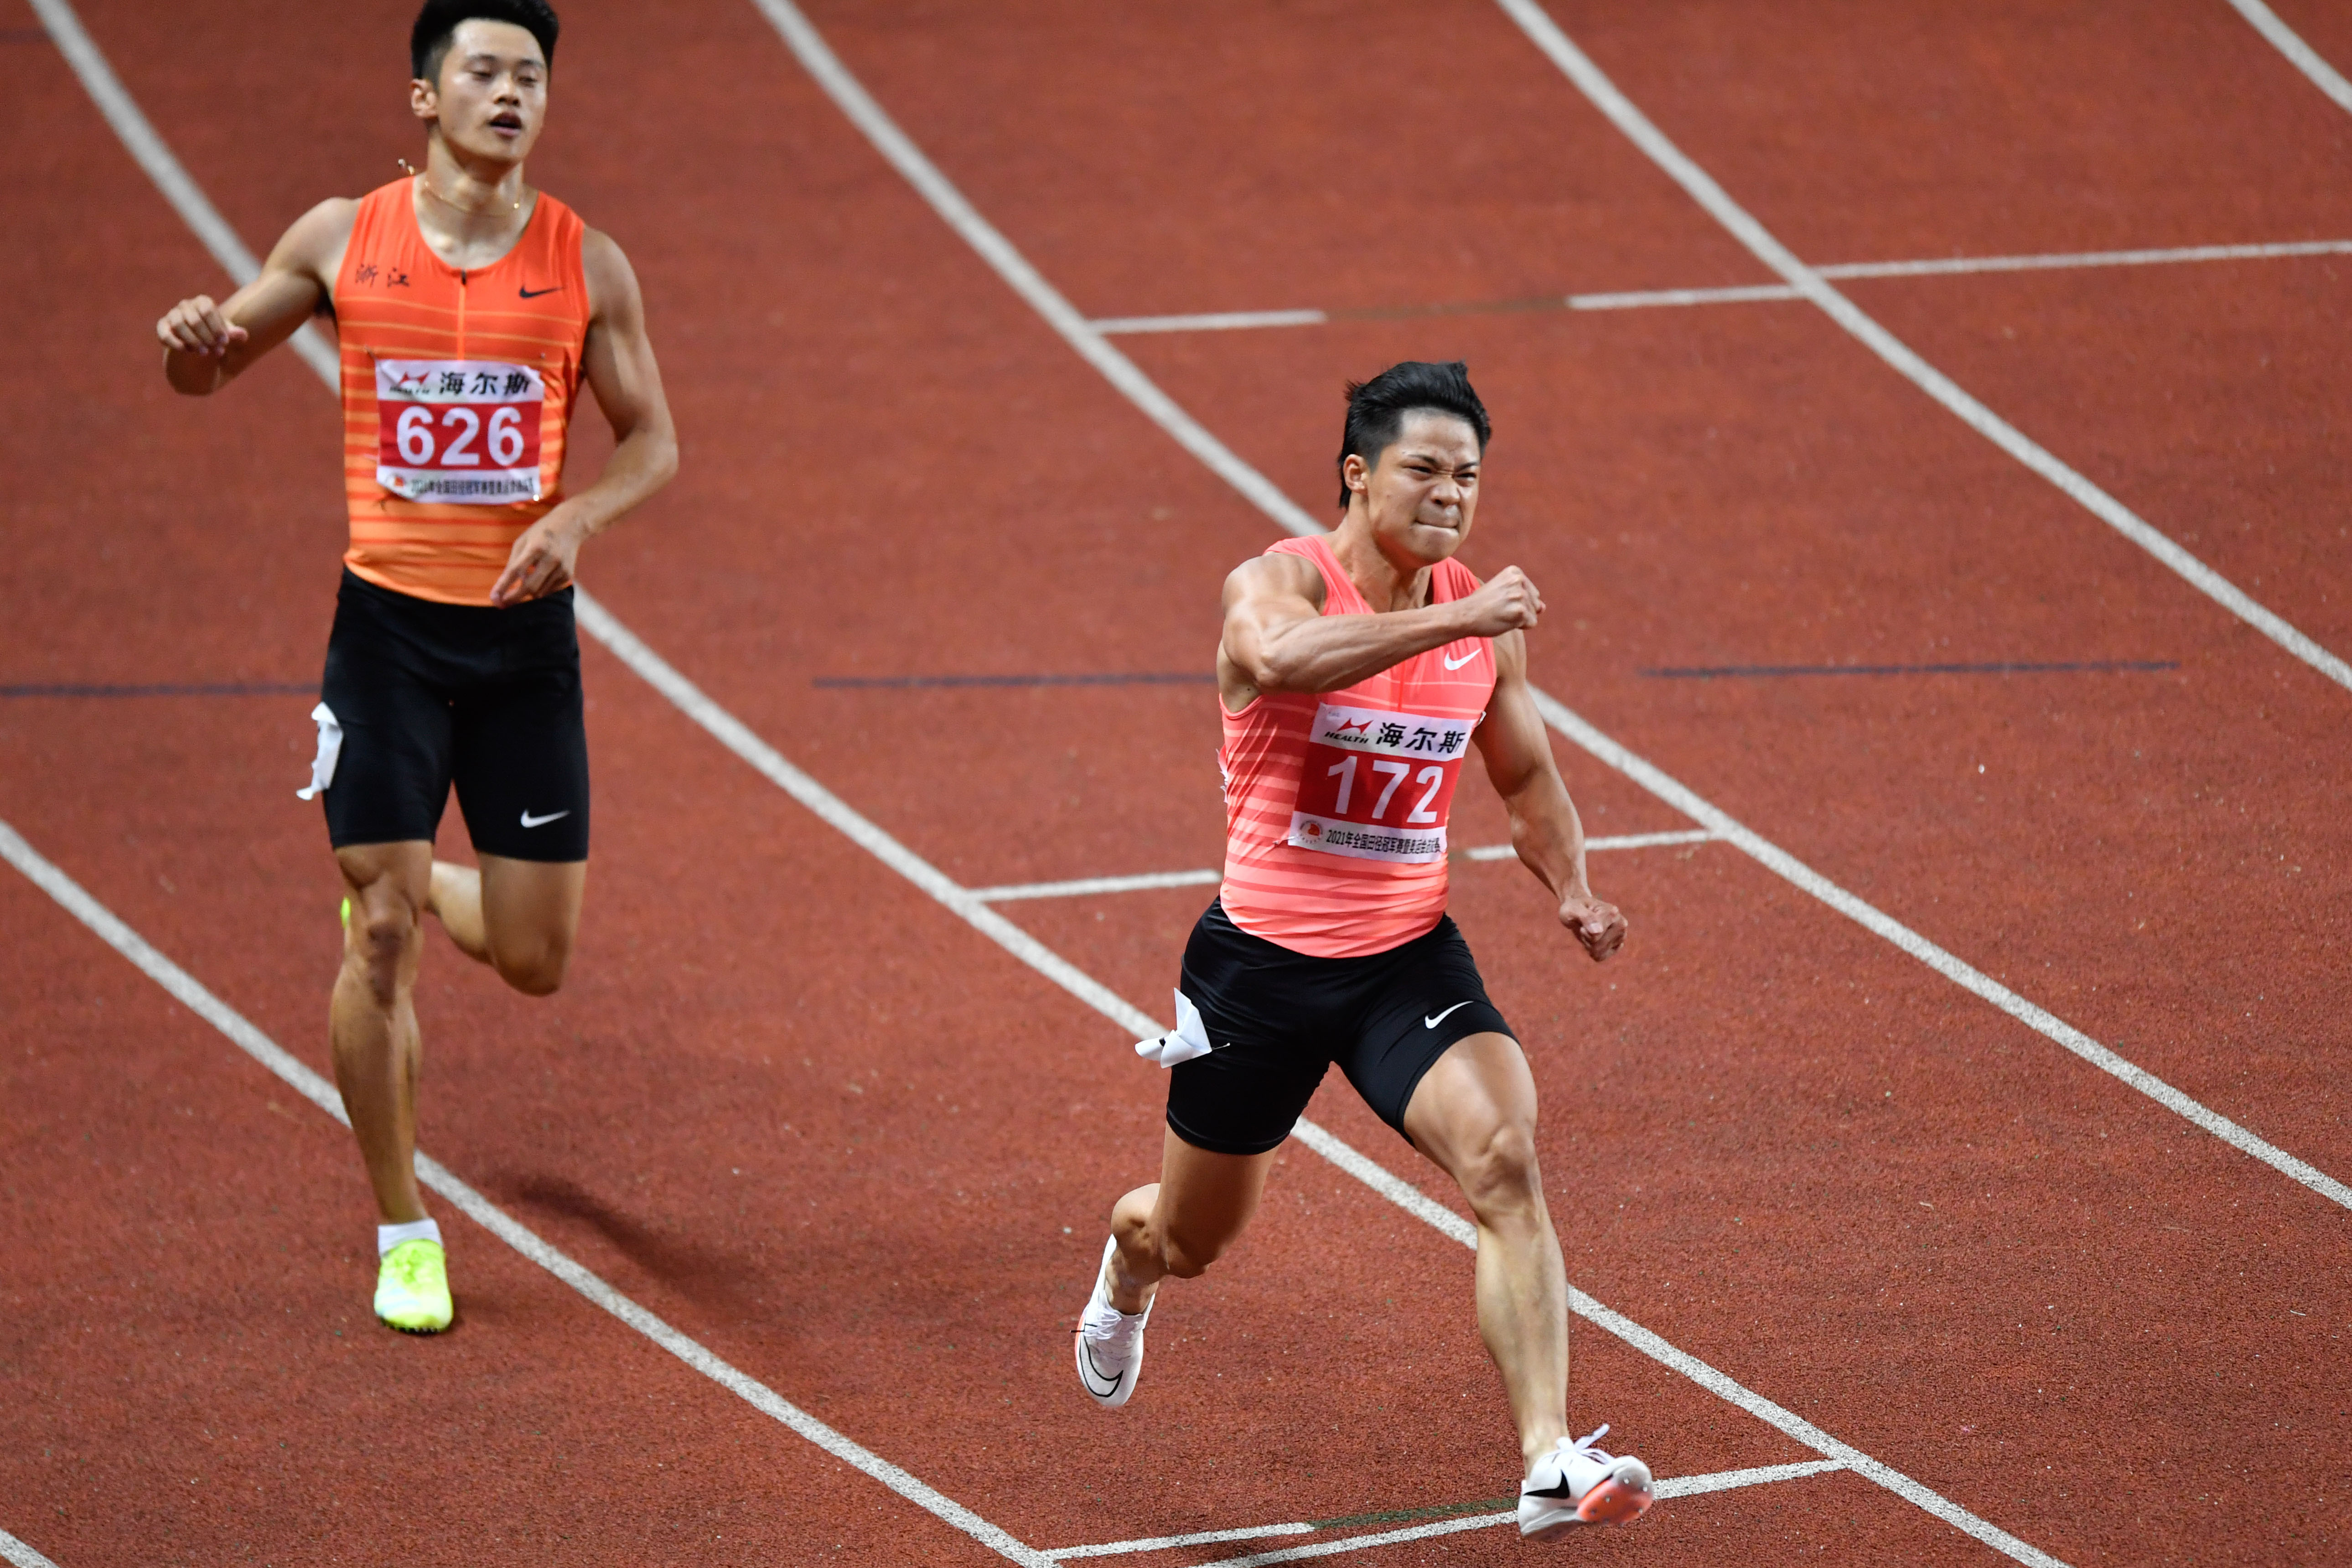 田径——全国冠军赛:苏炳添夺得男子100米冠军